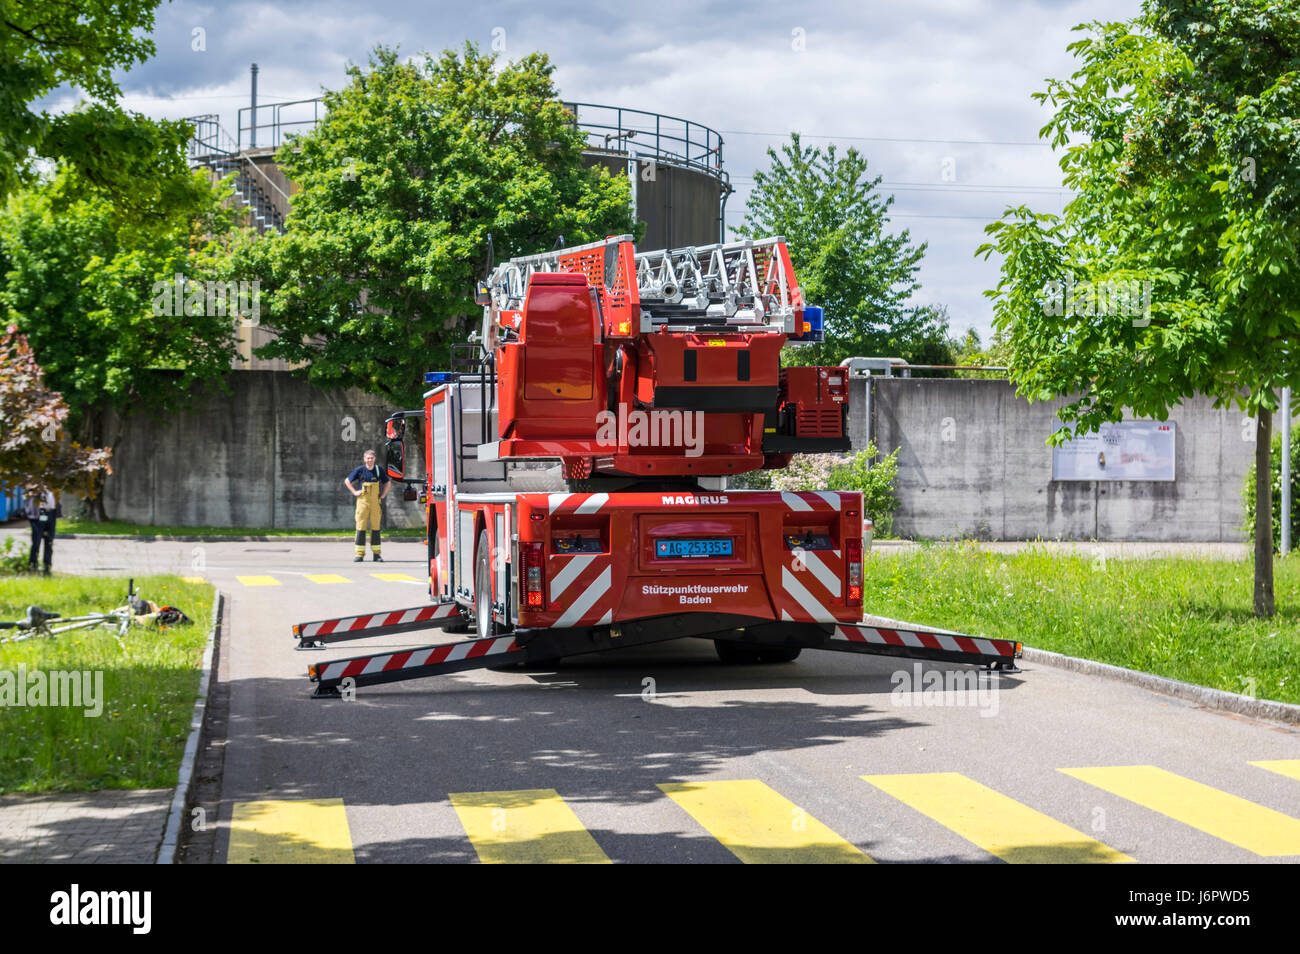 Heckansicht des einen Leiterwagen einer Schweizer Feuerwehr Iveco Magirus  160E30 Plattenspieler. Ausleger/Buchsen erweitert, aber Leiter noch  eingefahren Stockfotografie - Alamy